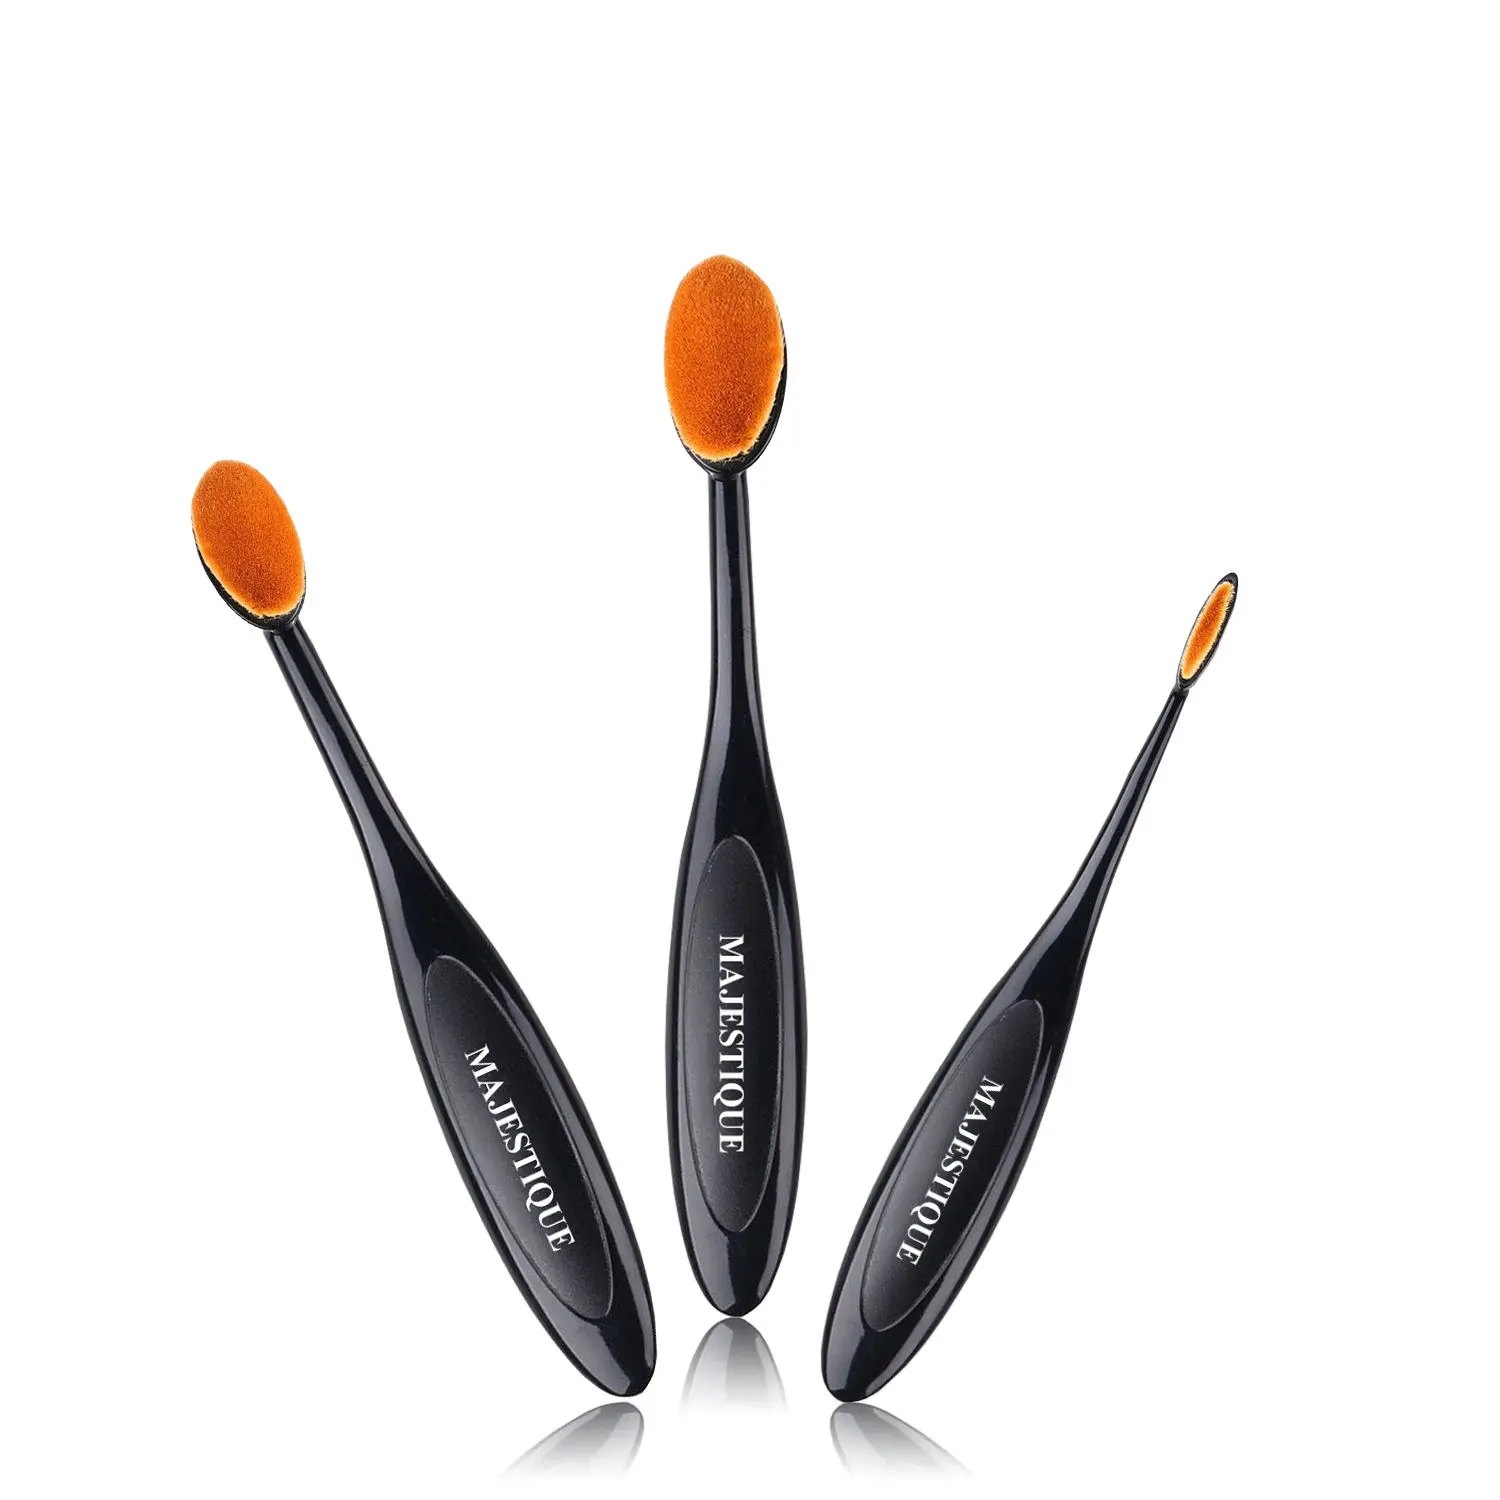 Majestique Professional Oval Makeup Brush Set CMB514 Contour brush,Eyeline brush,Foundation brush for Women and Girls